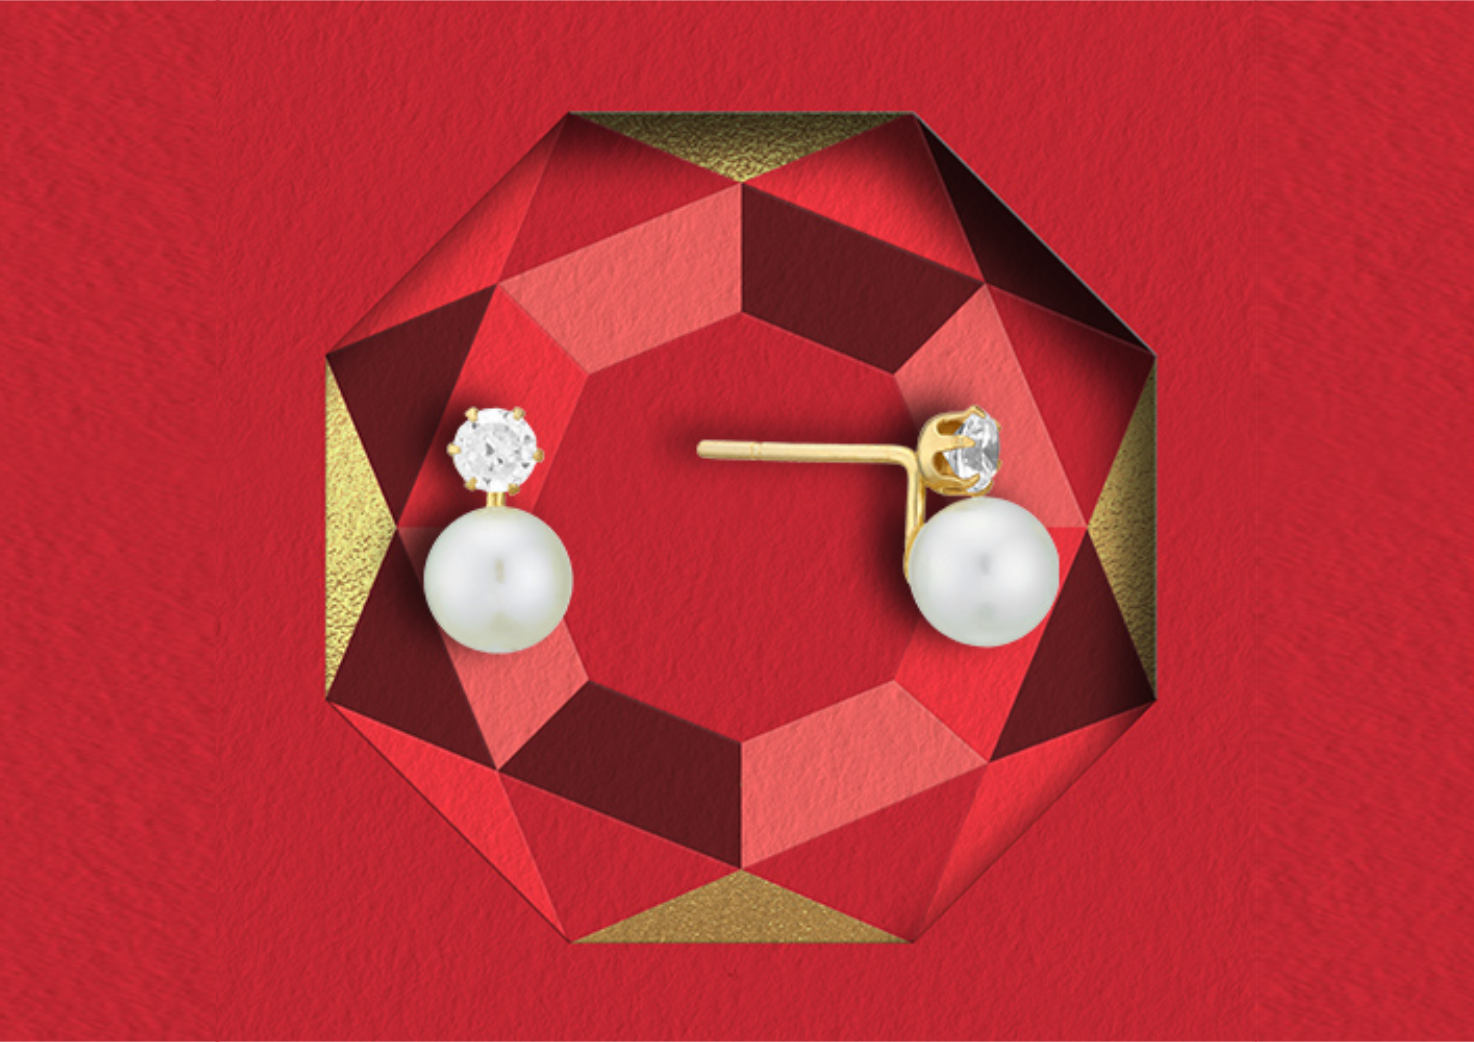 pearl earrings